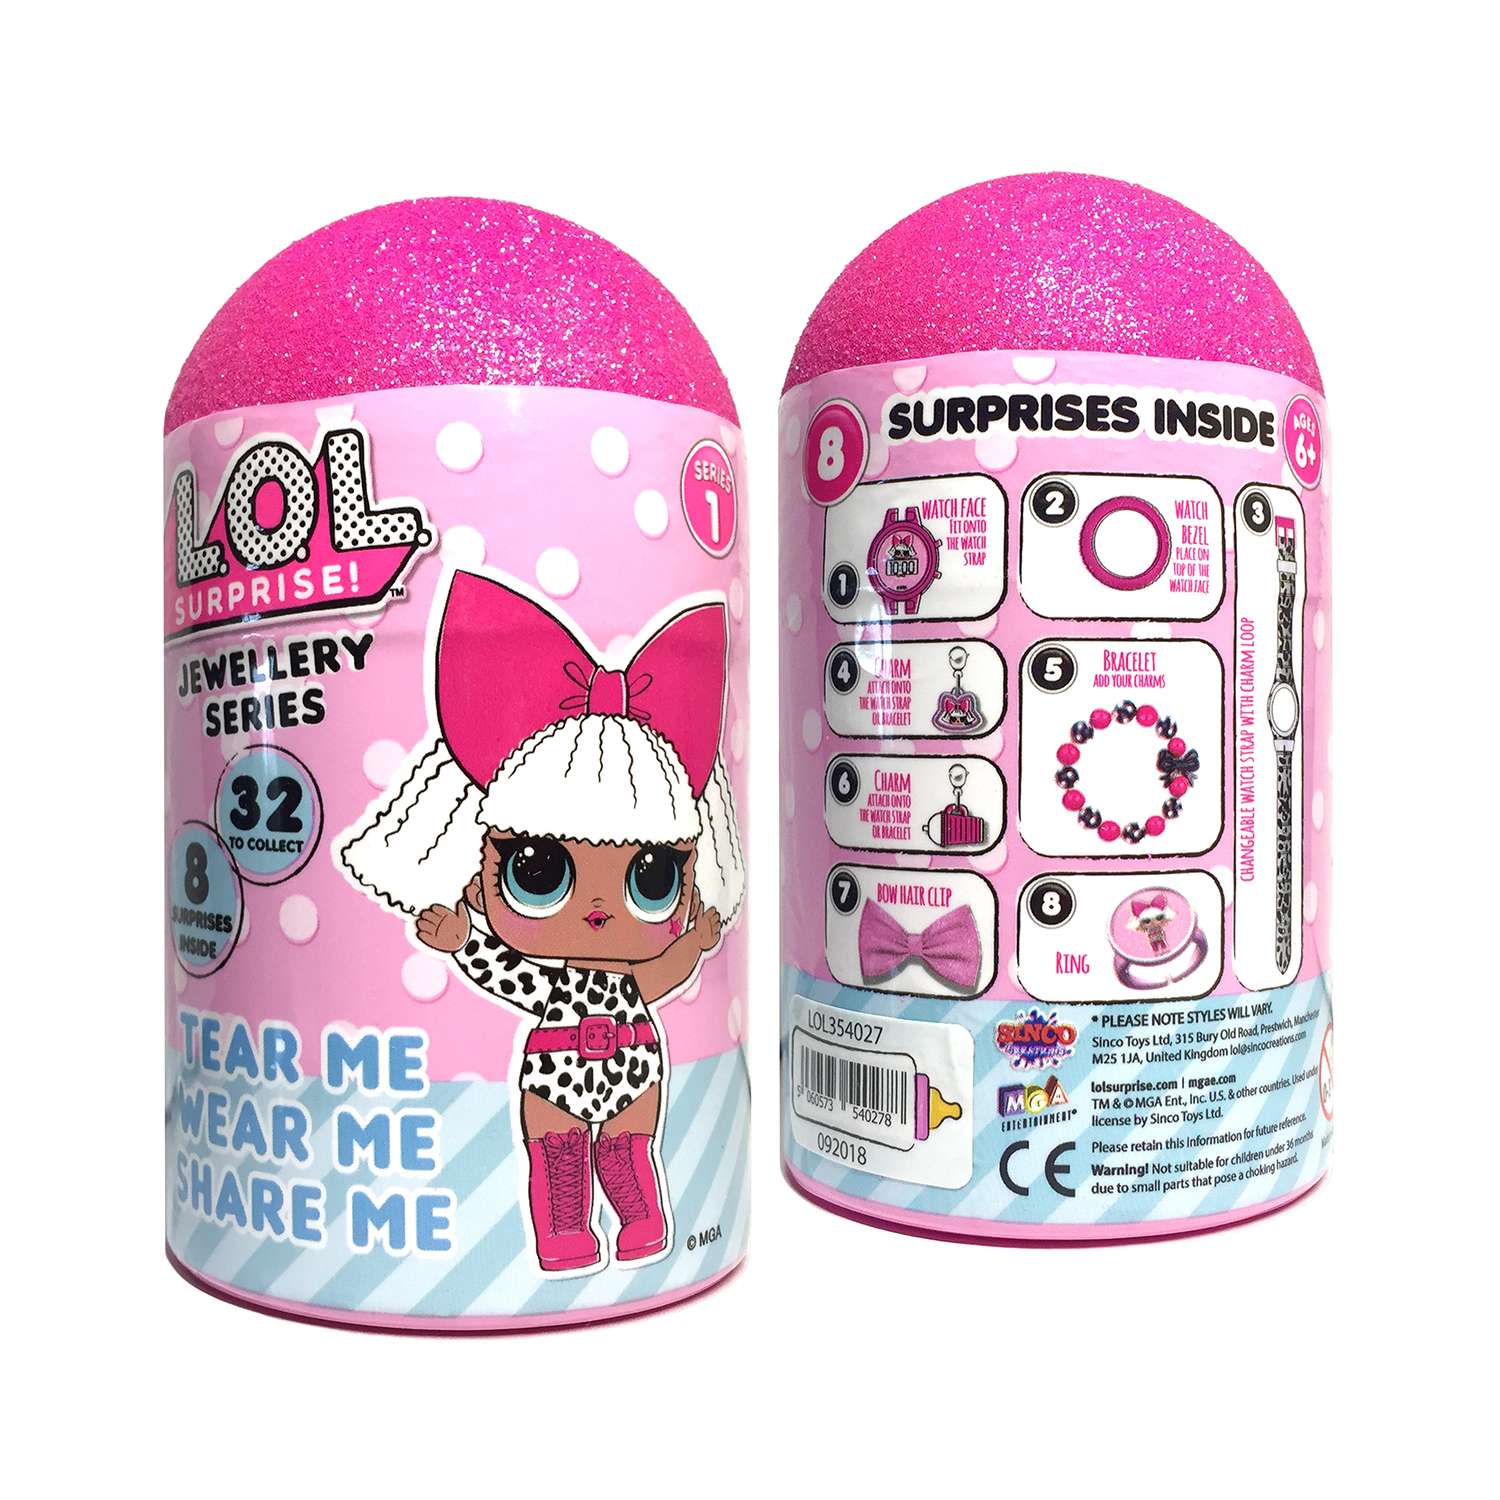 Набор украшений Sinco Toys L.O.L. с часами 8шт в непрозрачной упаковке (Сюрприз) LOL354027 - фото 3